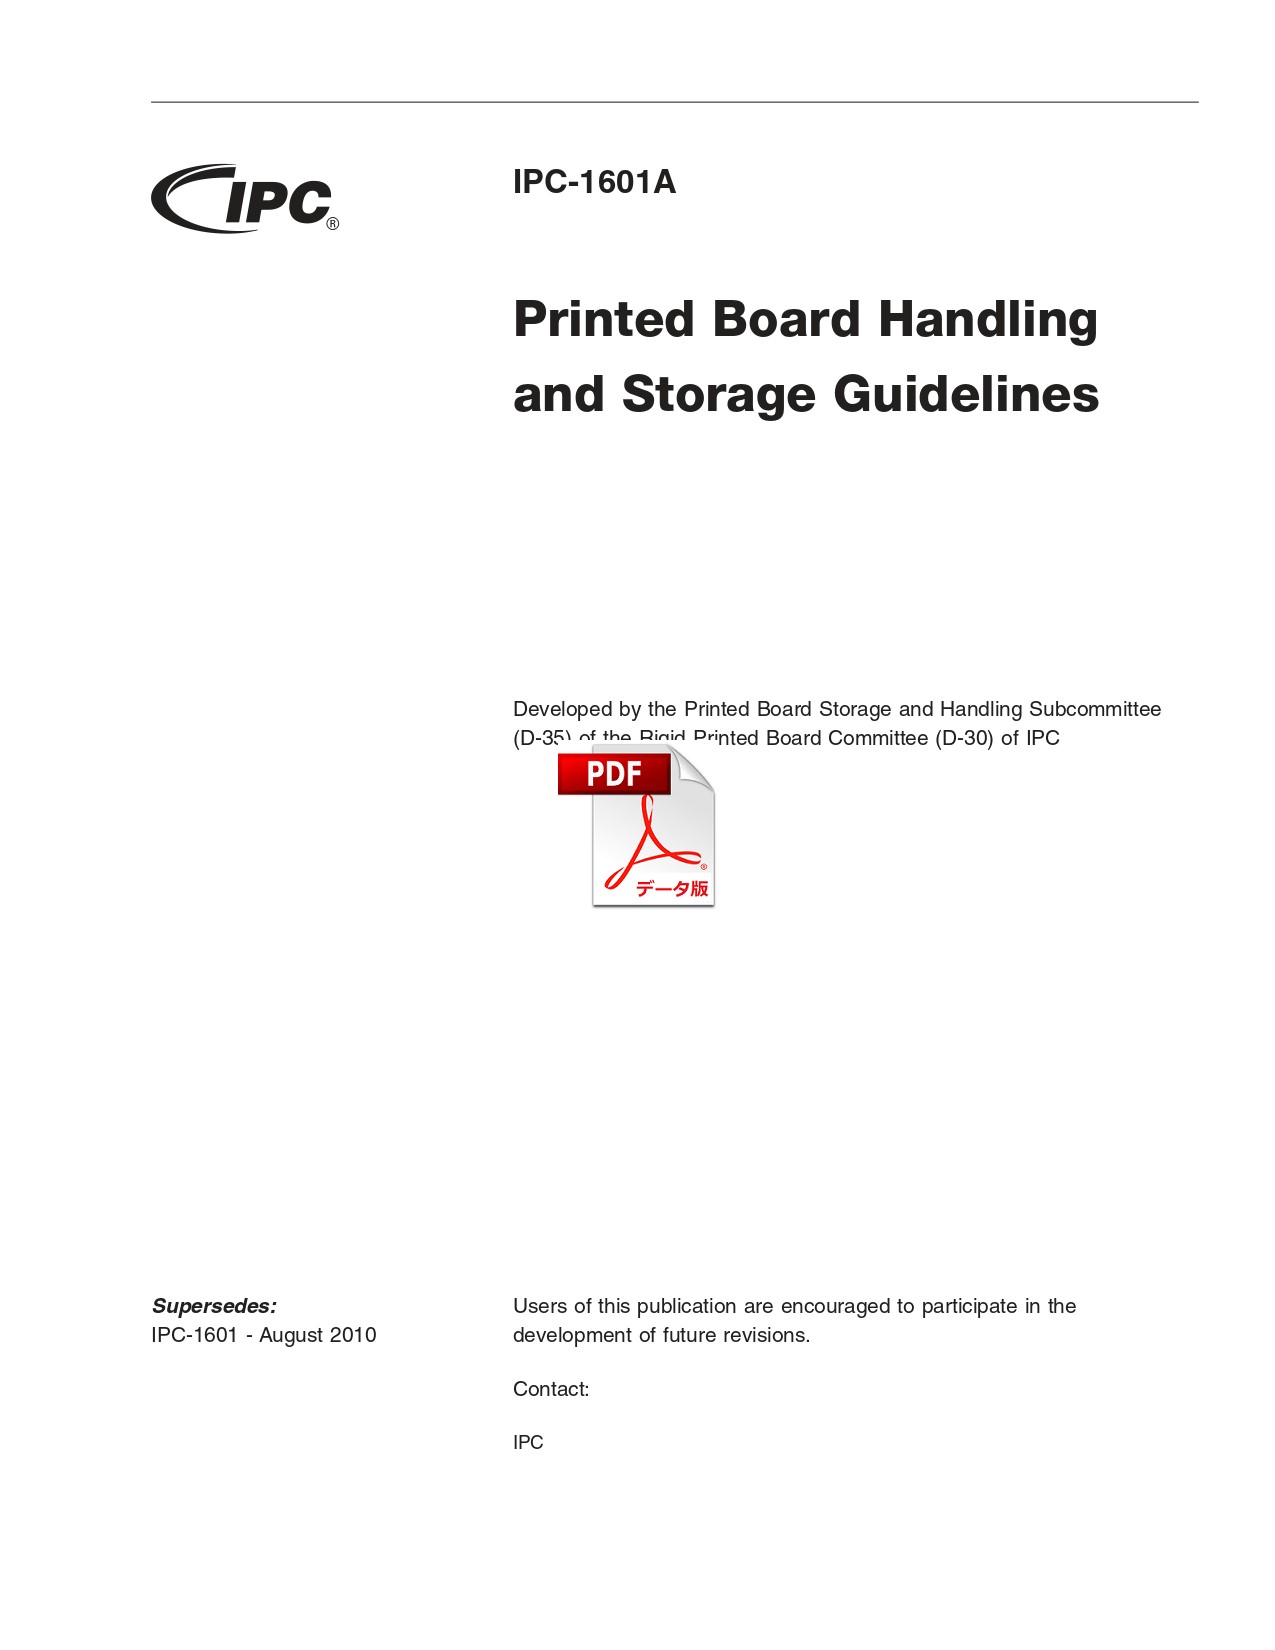 【英語版】IPC-1601A: Printed Board Handling and Storage Guidelines